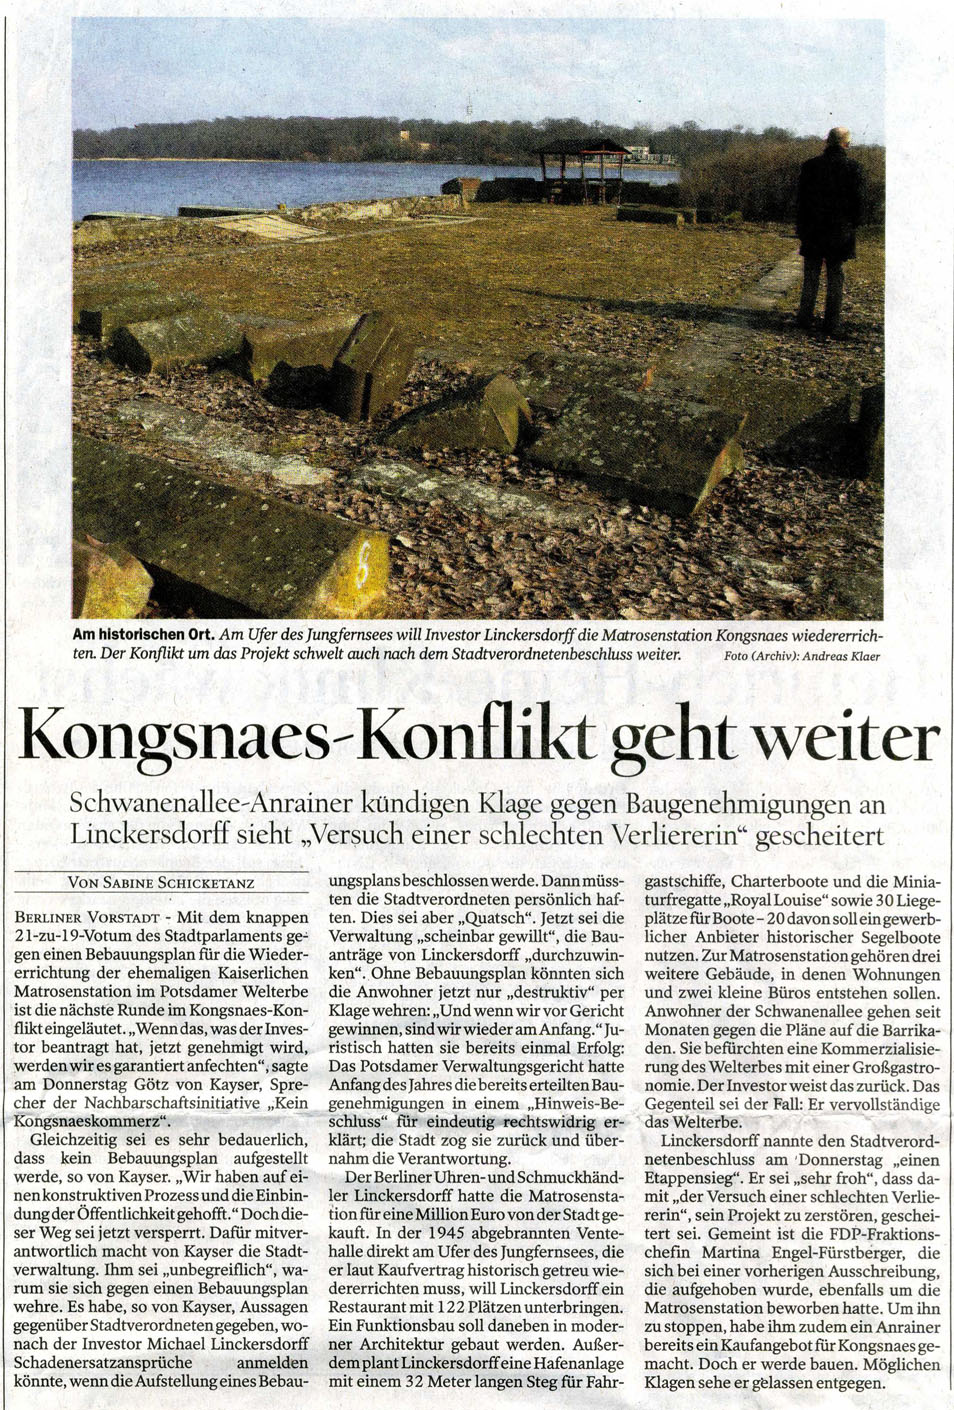 Potsdamer Neueste Nachrichten 30.09.2011